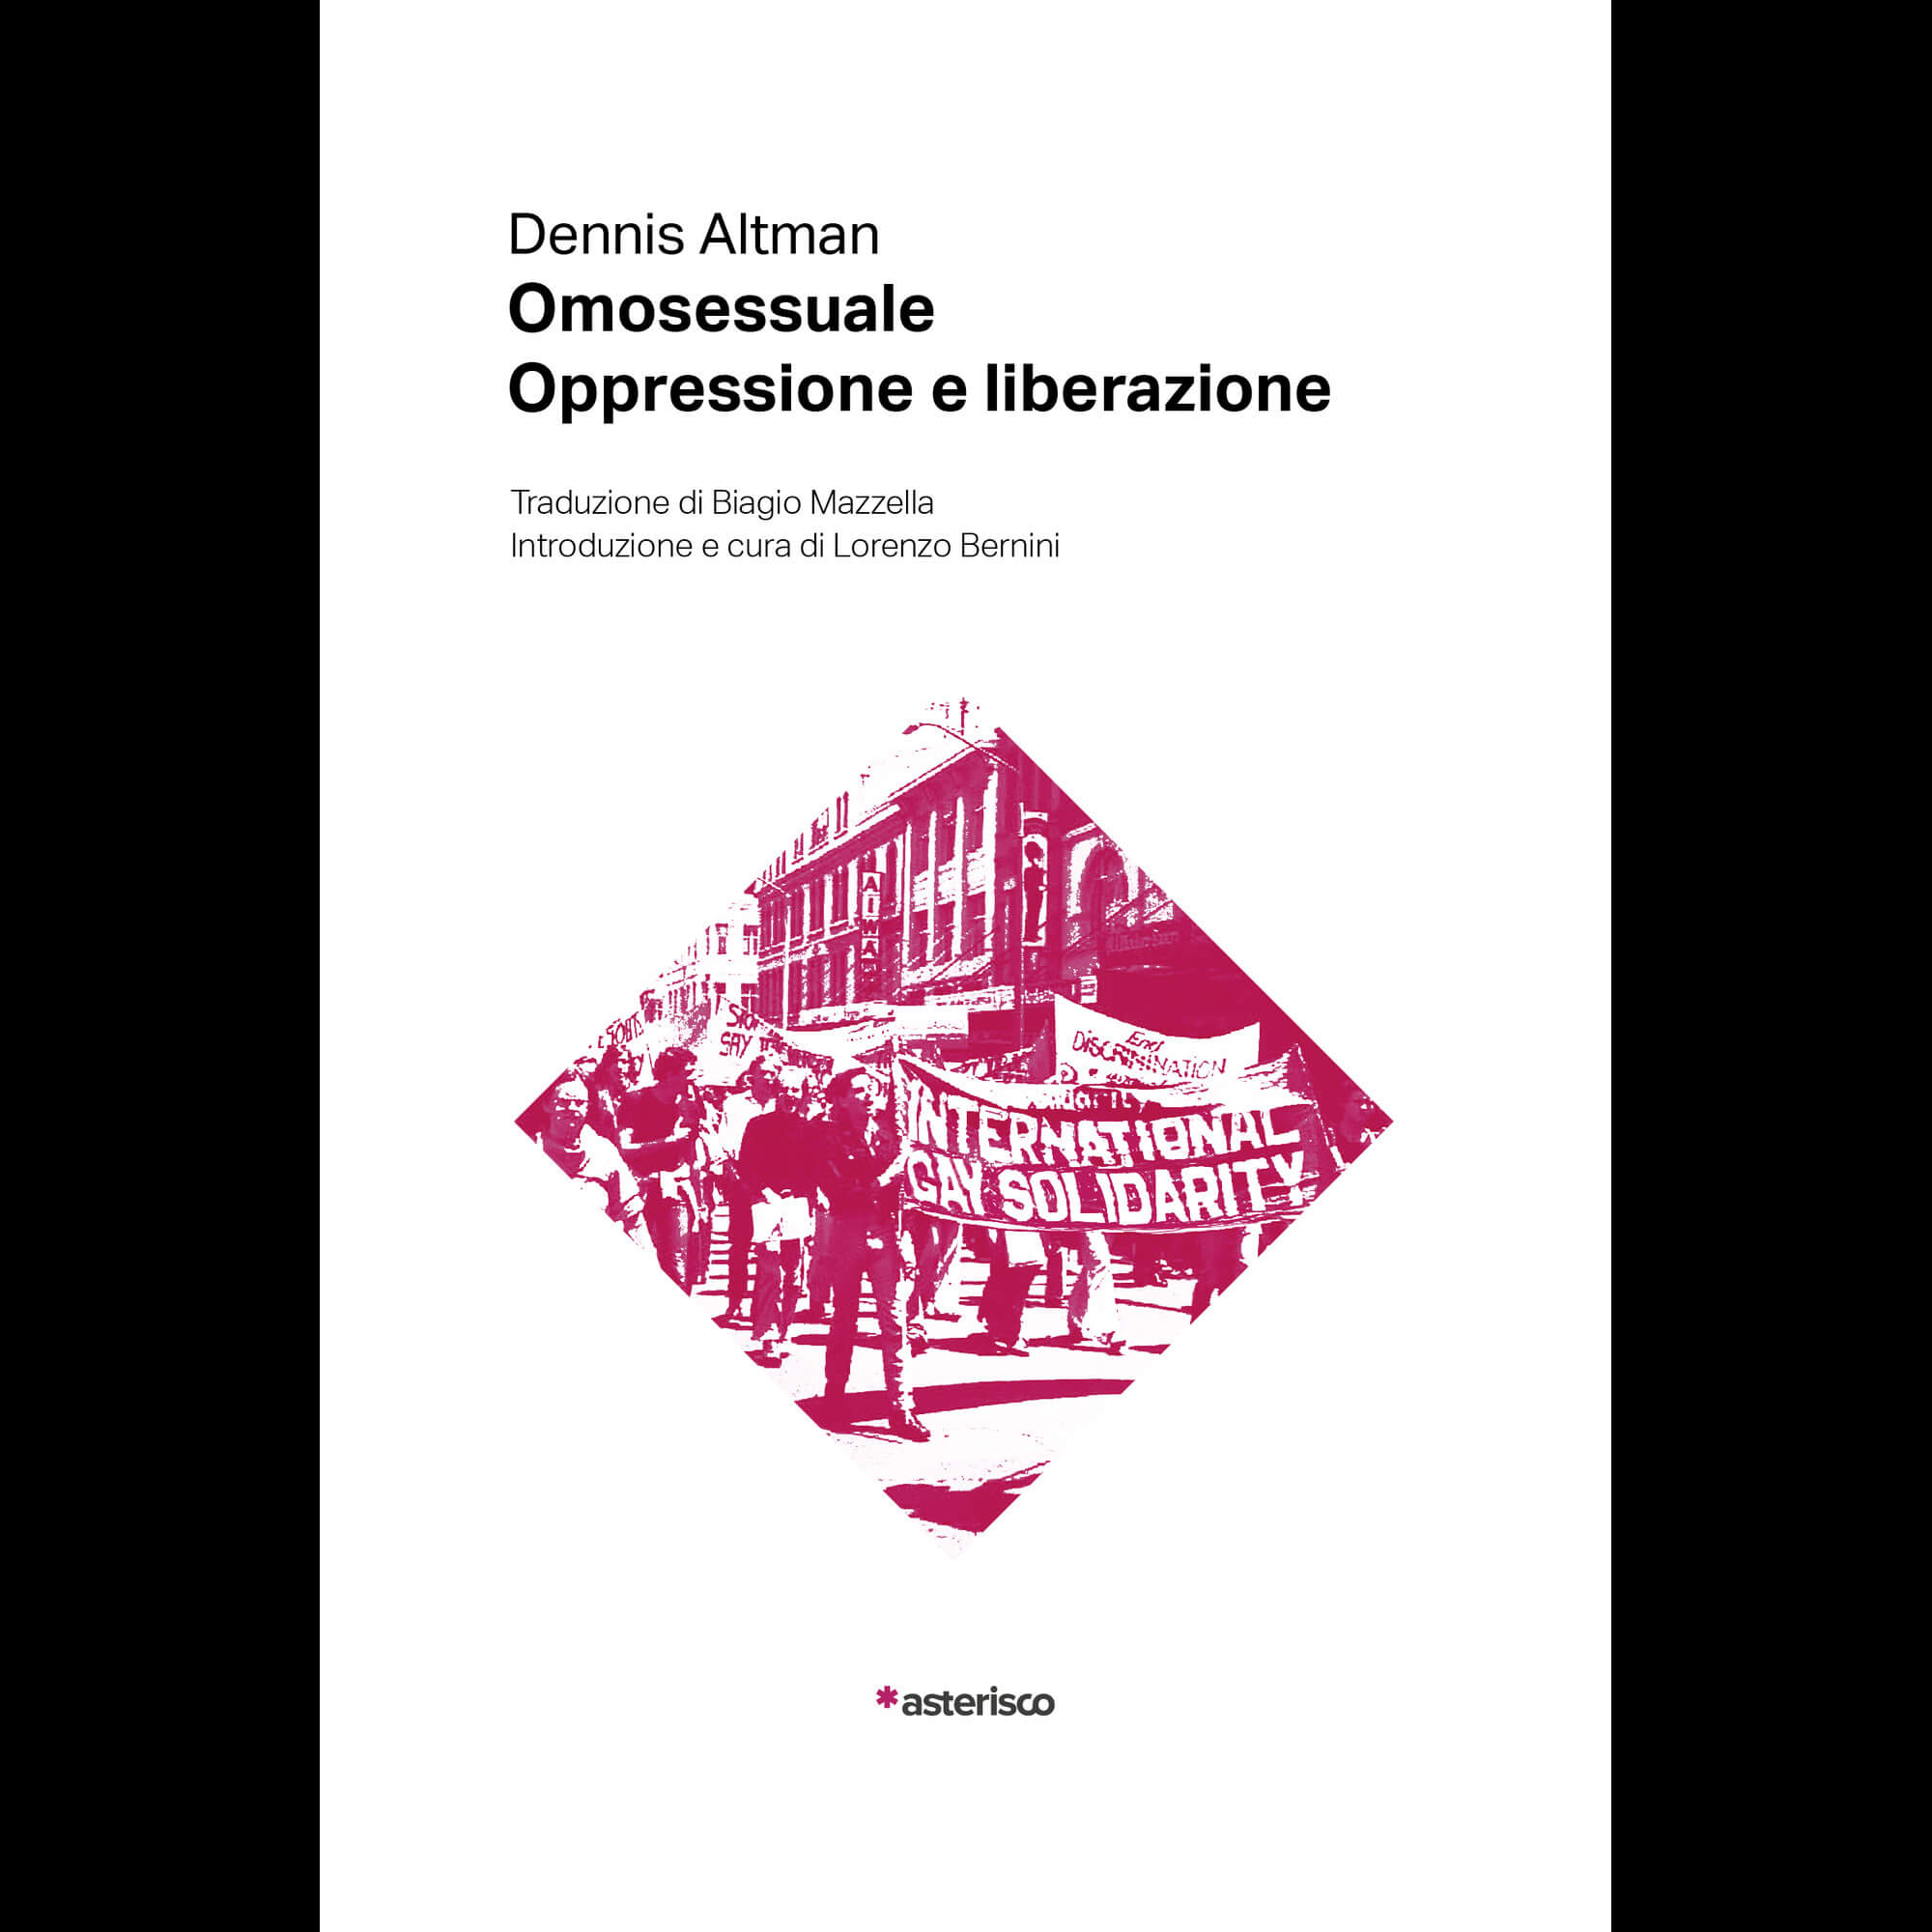 Dennis Altman, Omosessuale. Oppressione e Liberazione (Asterisco Edizioni, 2024)